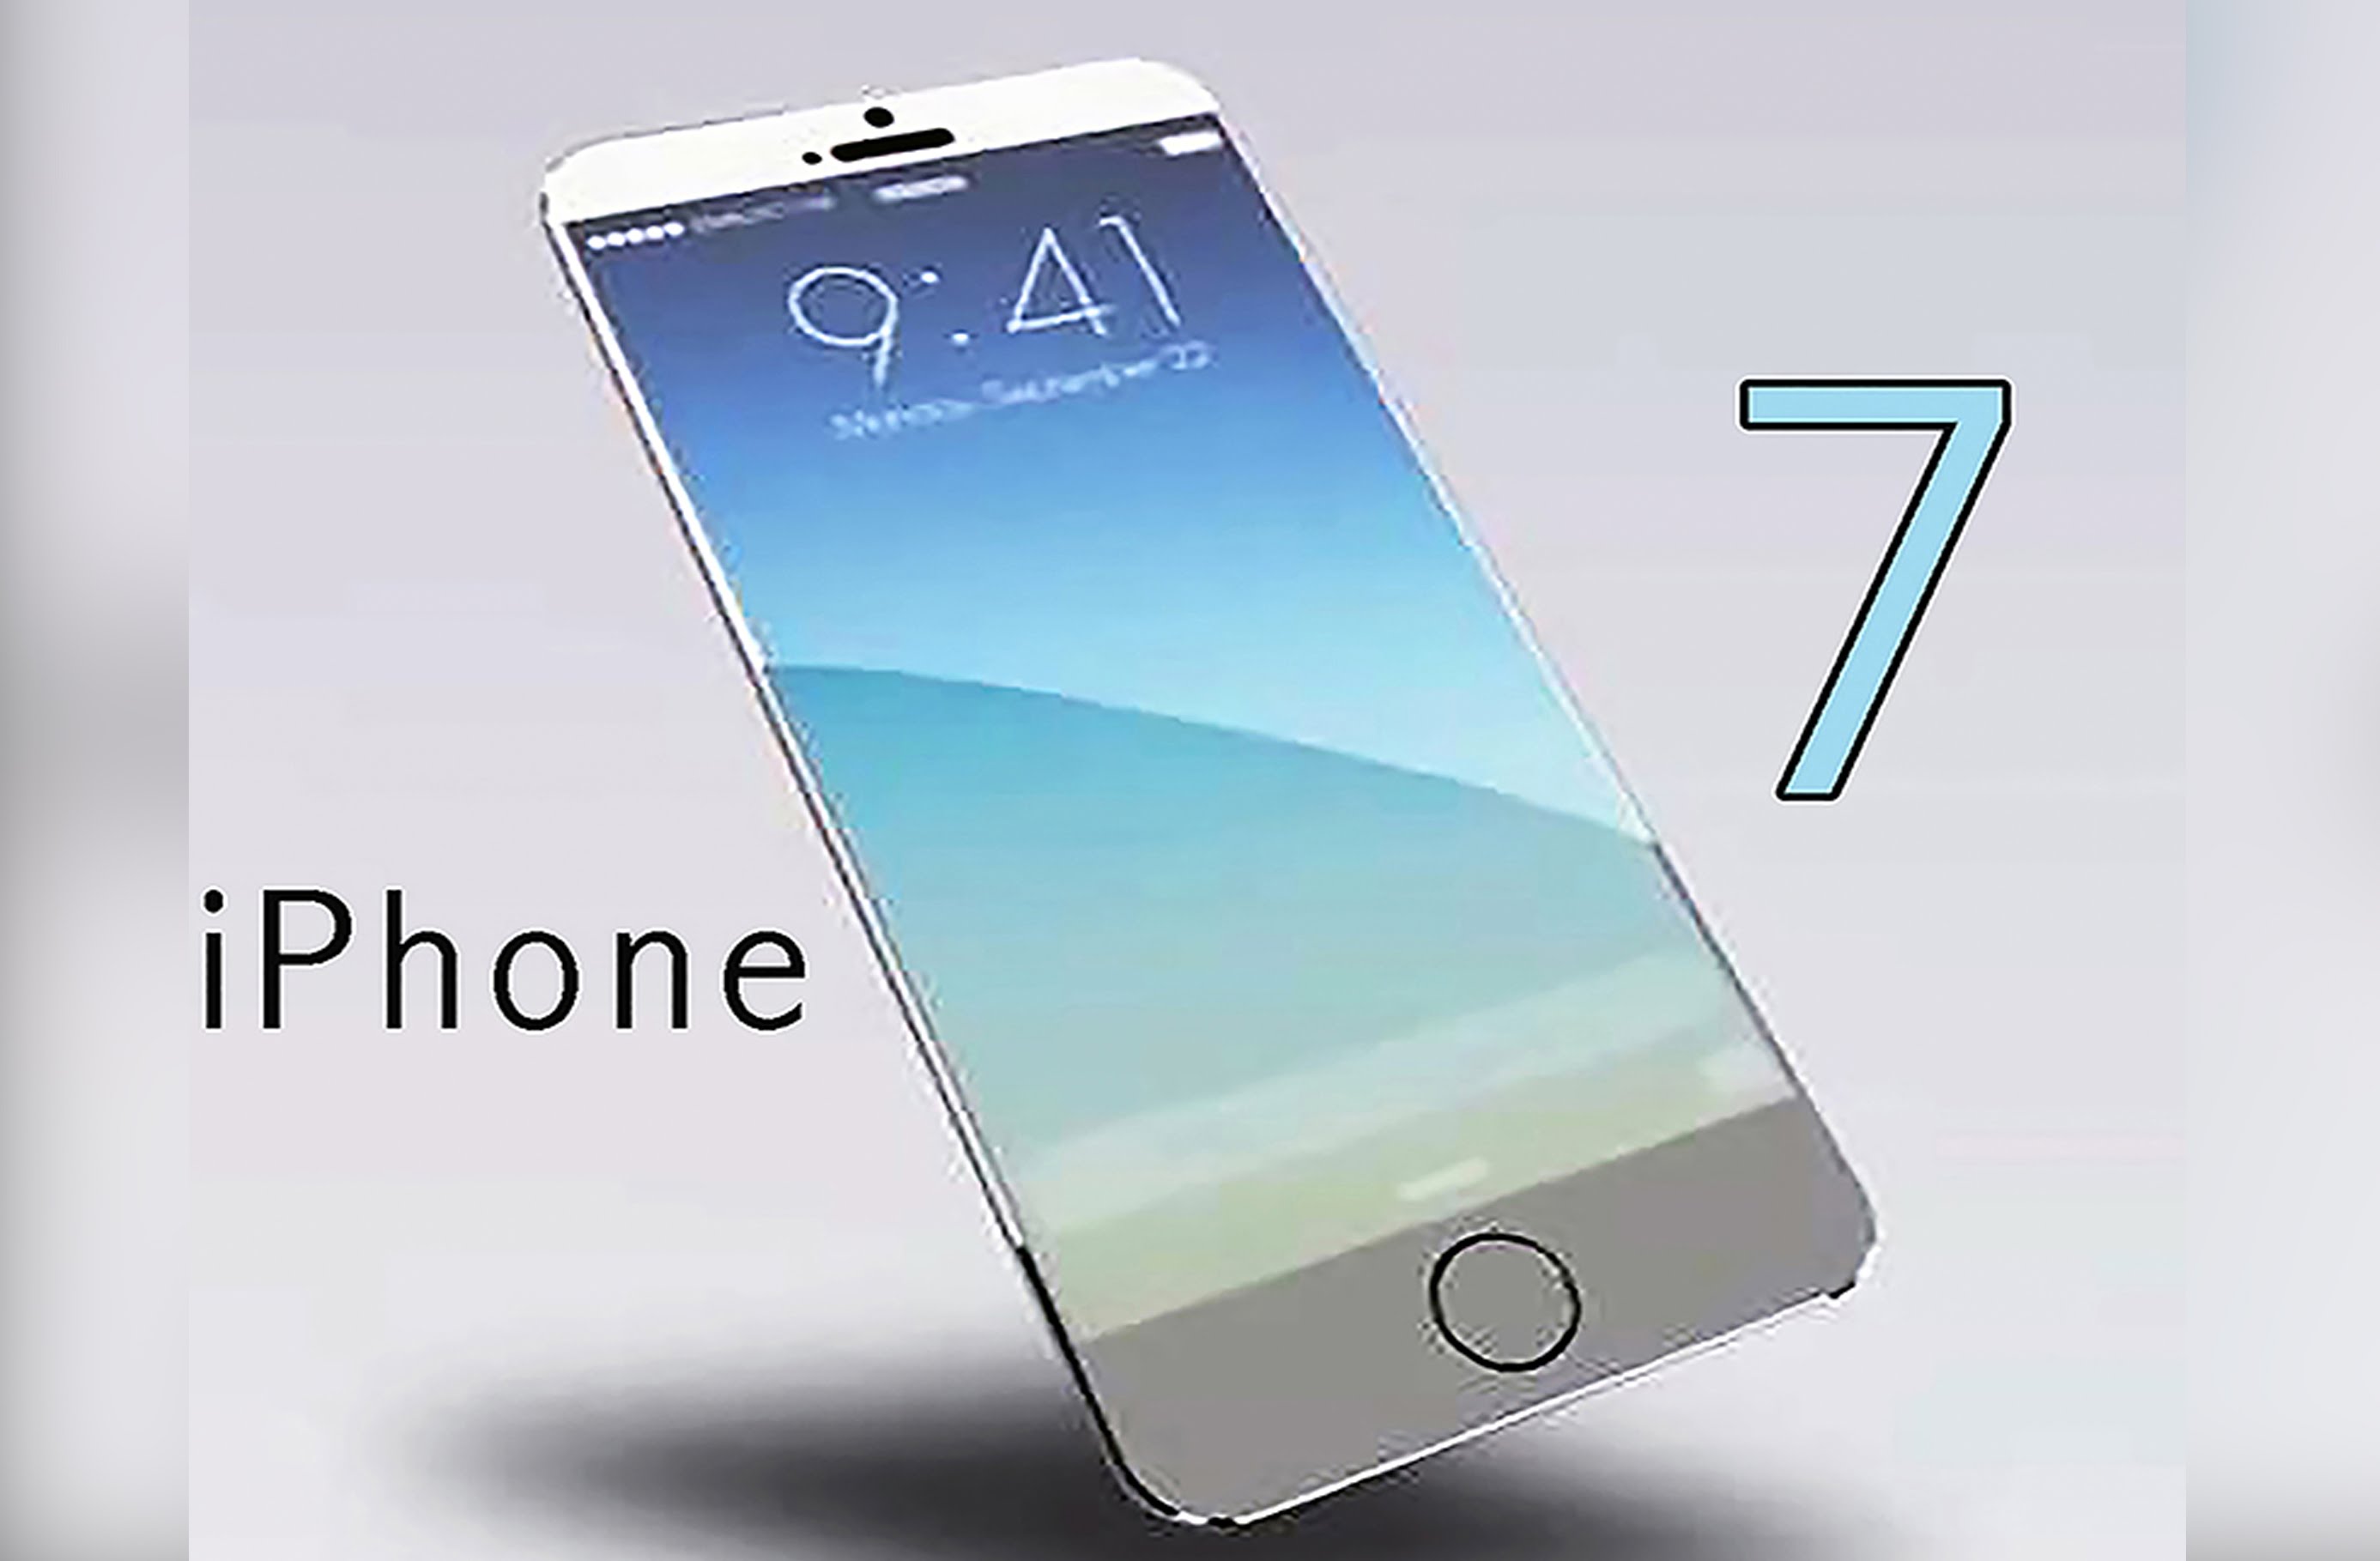 El nuevo IPhone 7 presenta innovaciones interesantes